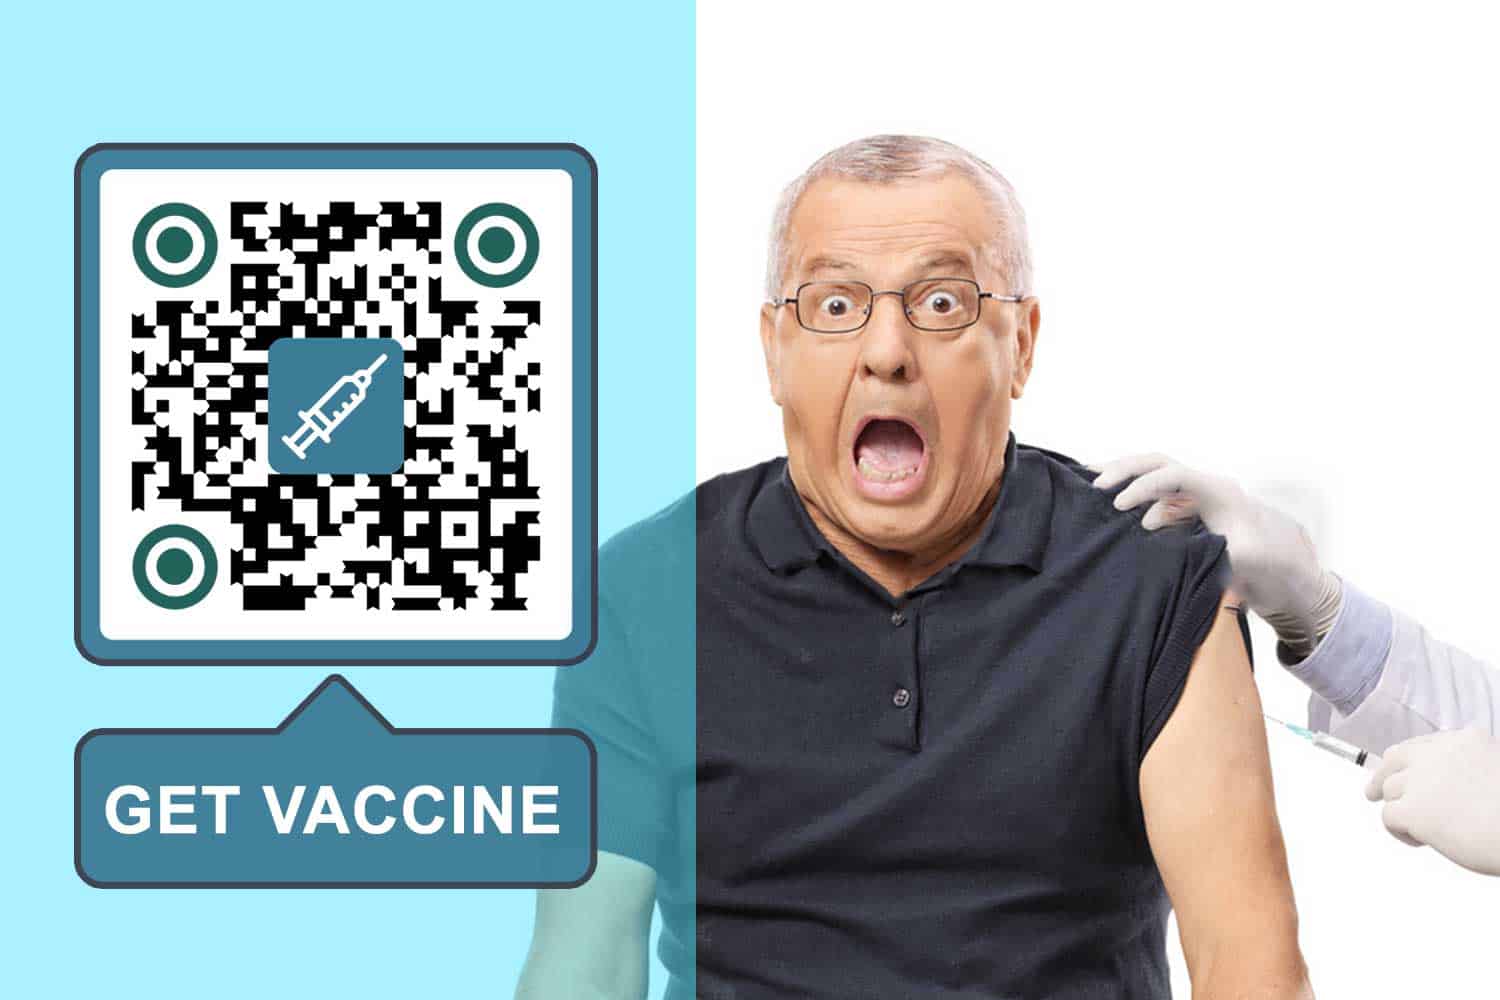 वैक्सीन के लिए क्यूआर कोड बनाएं